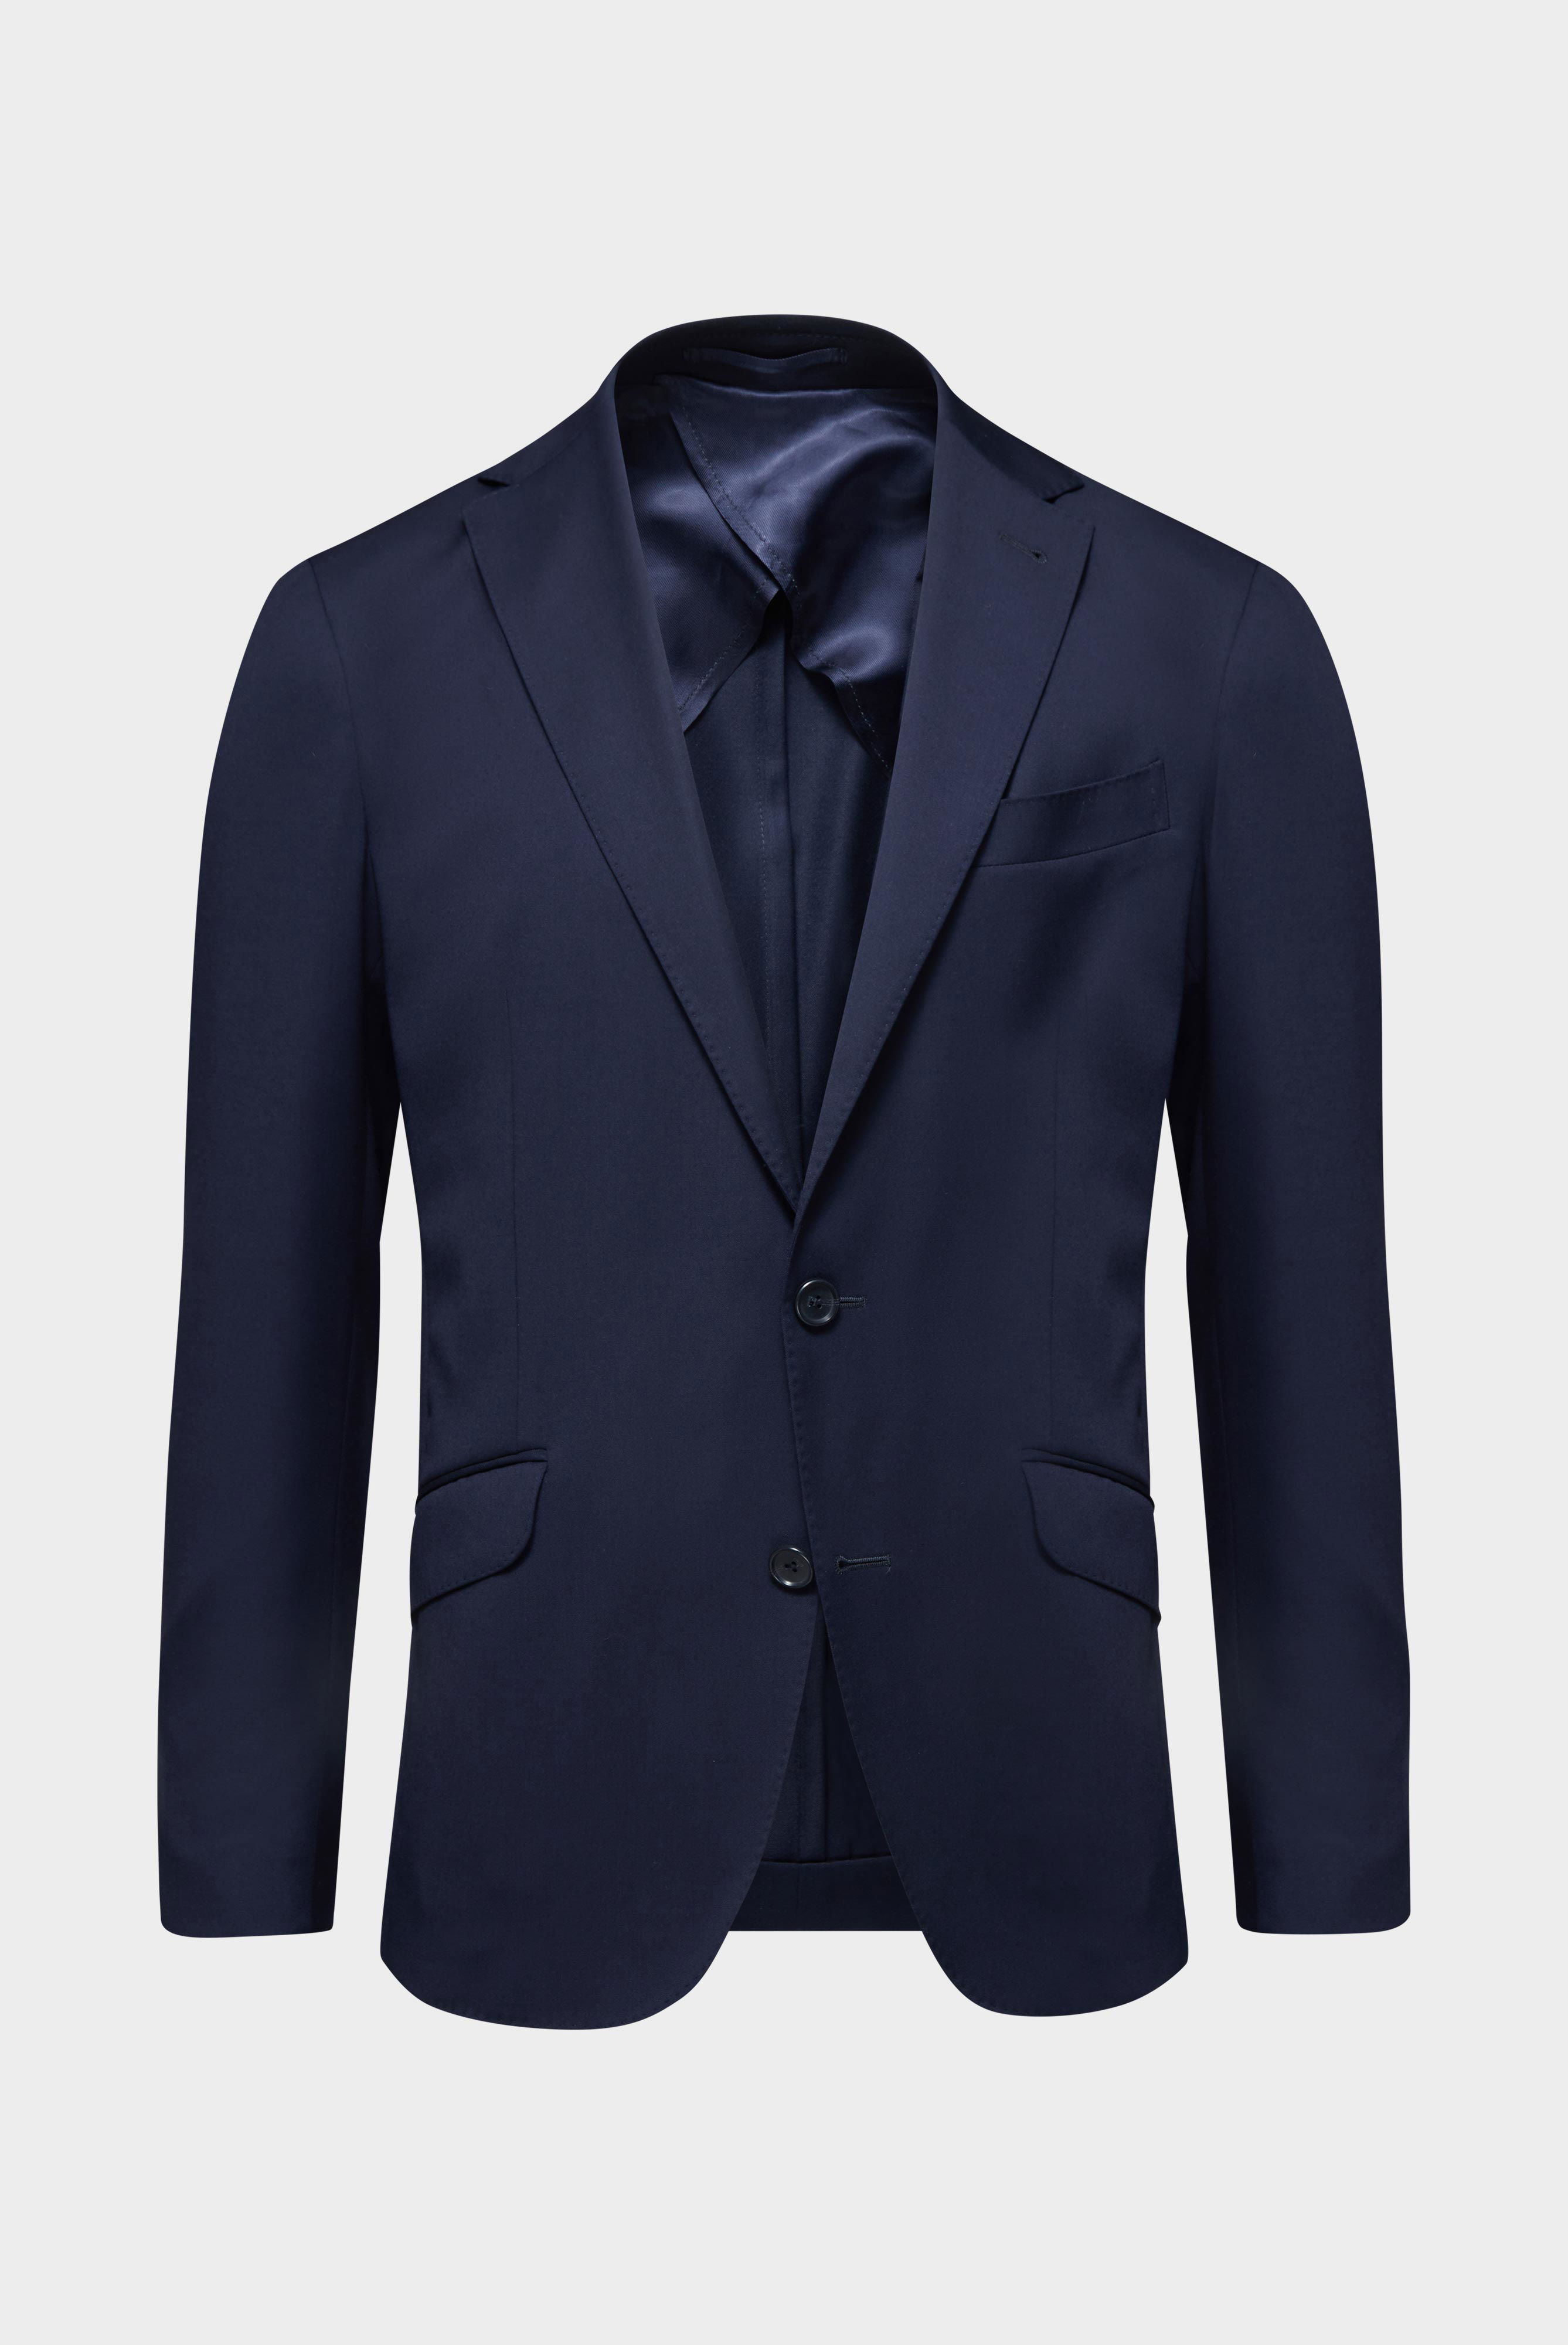 Blazers+Wool Jacket Slim Fit+20.7759..H01010.780.23